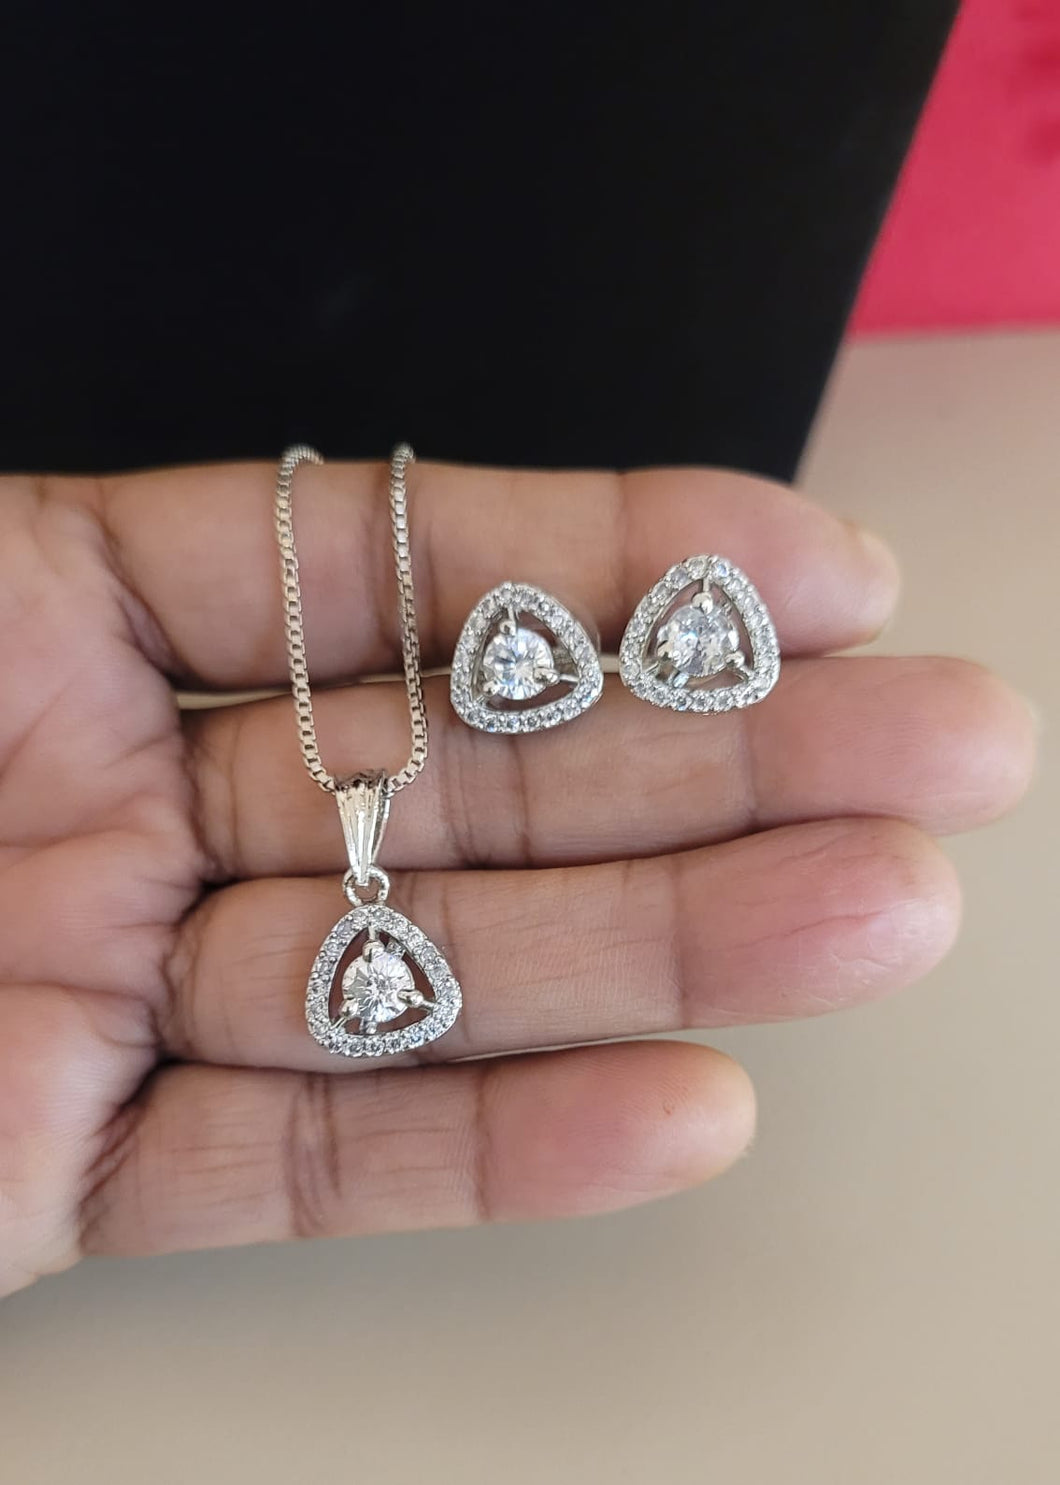 Solitaire Diamond Pendant Necklace Set